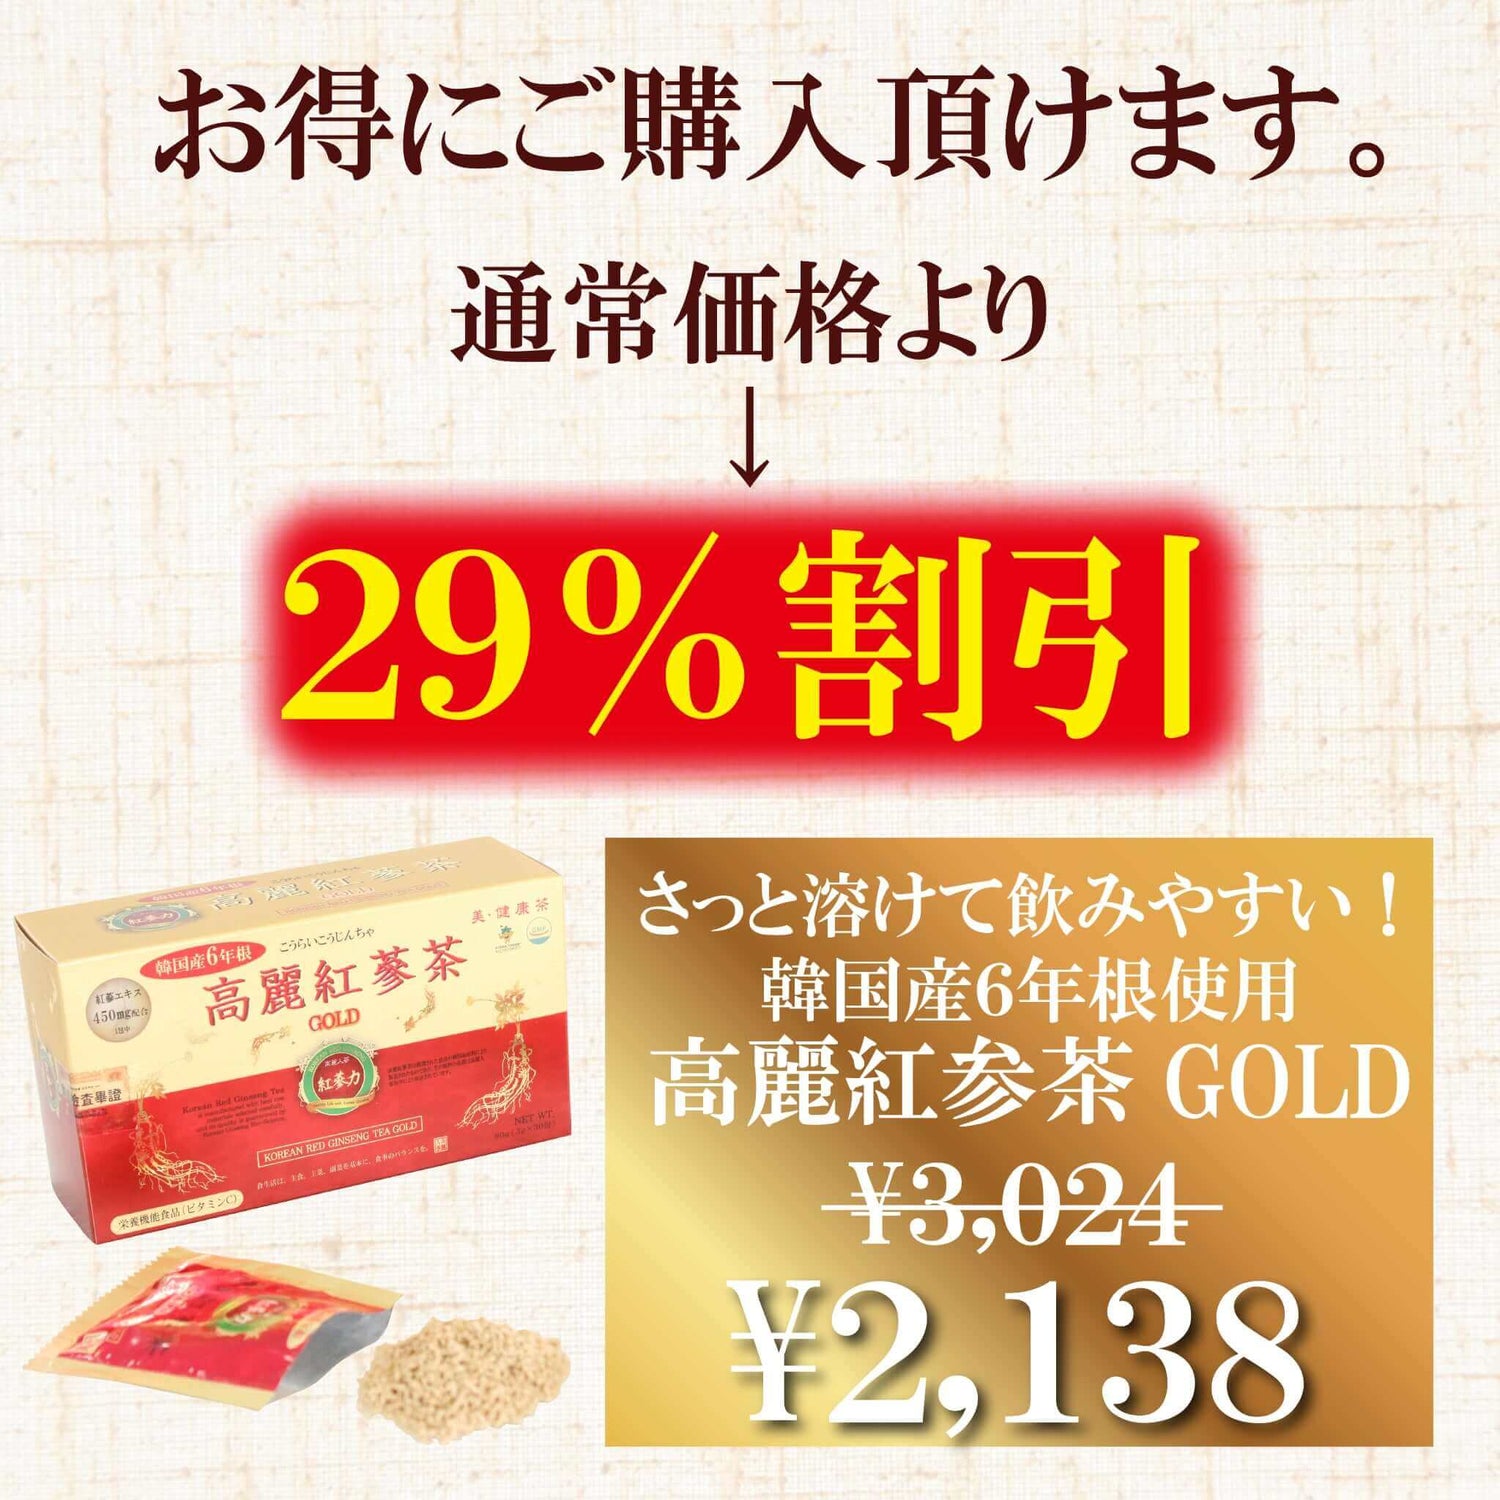 【紅参力】高麗紅参茶GOLD - 韓国惣菜bibim'ネットストア